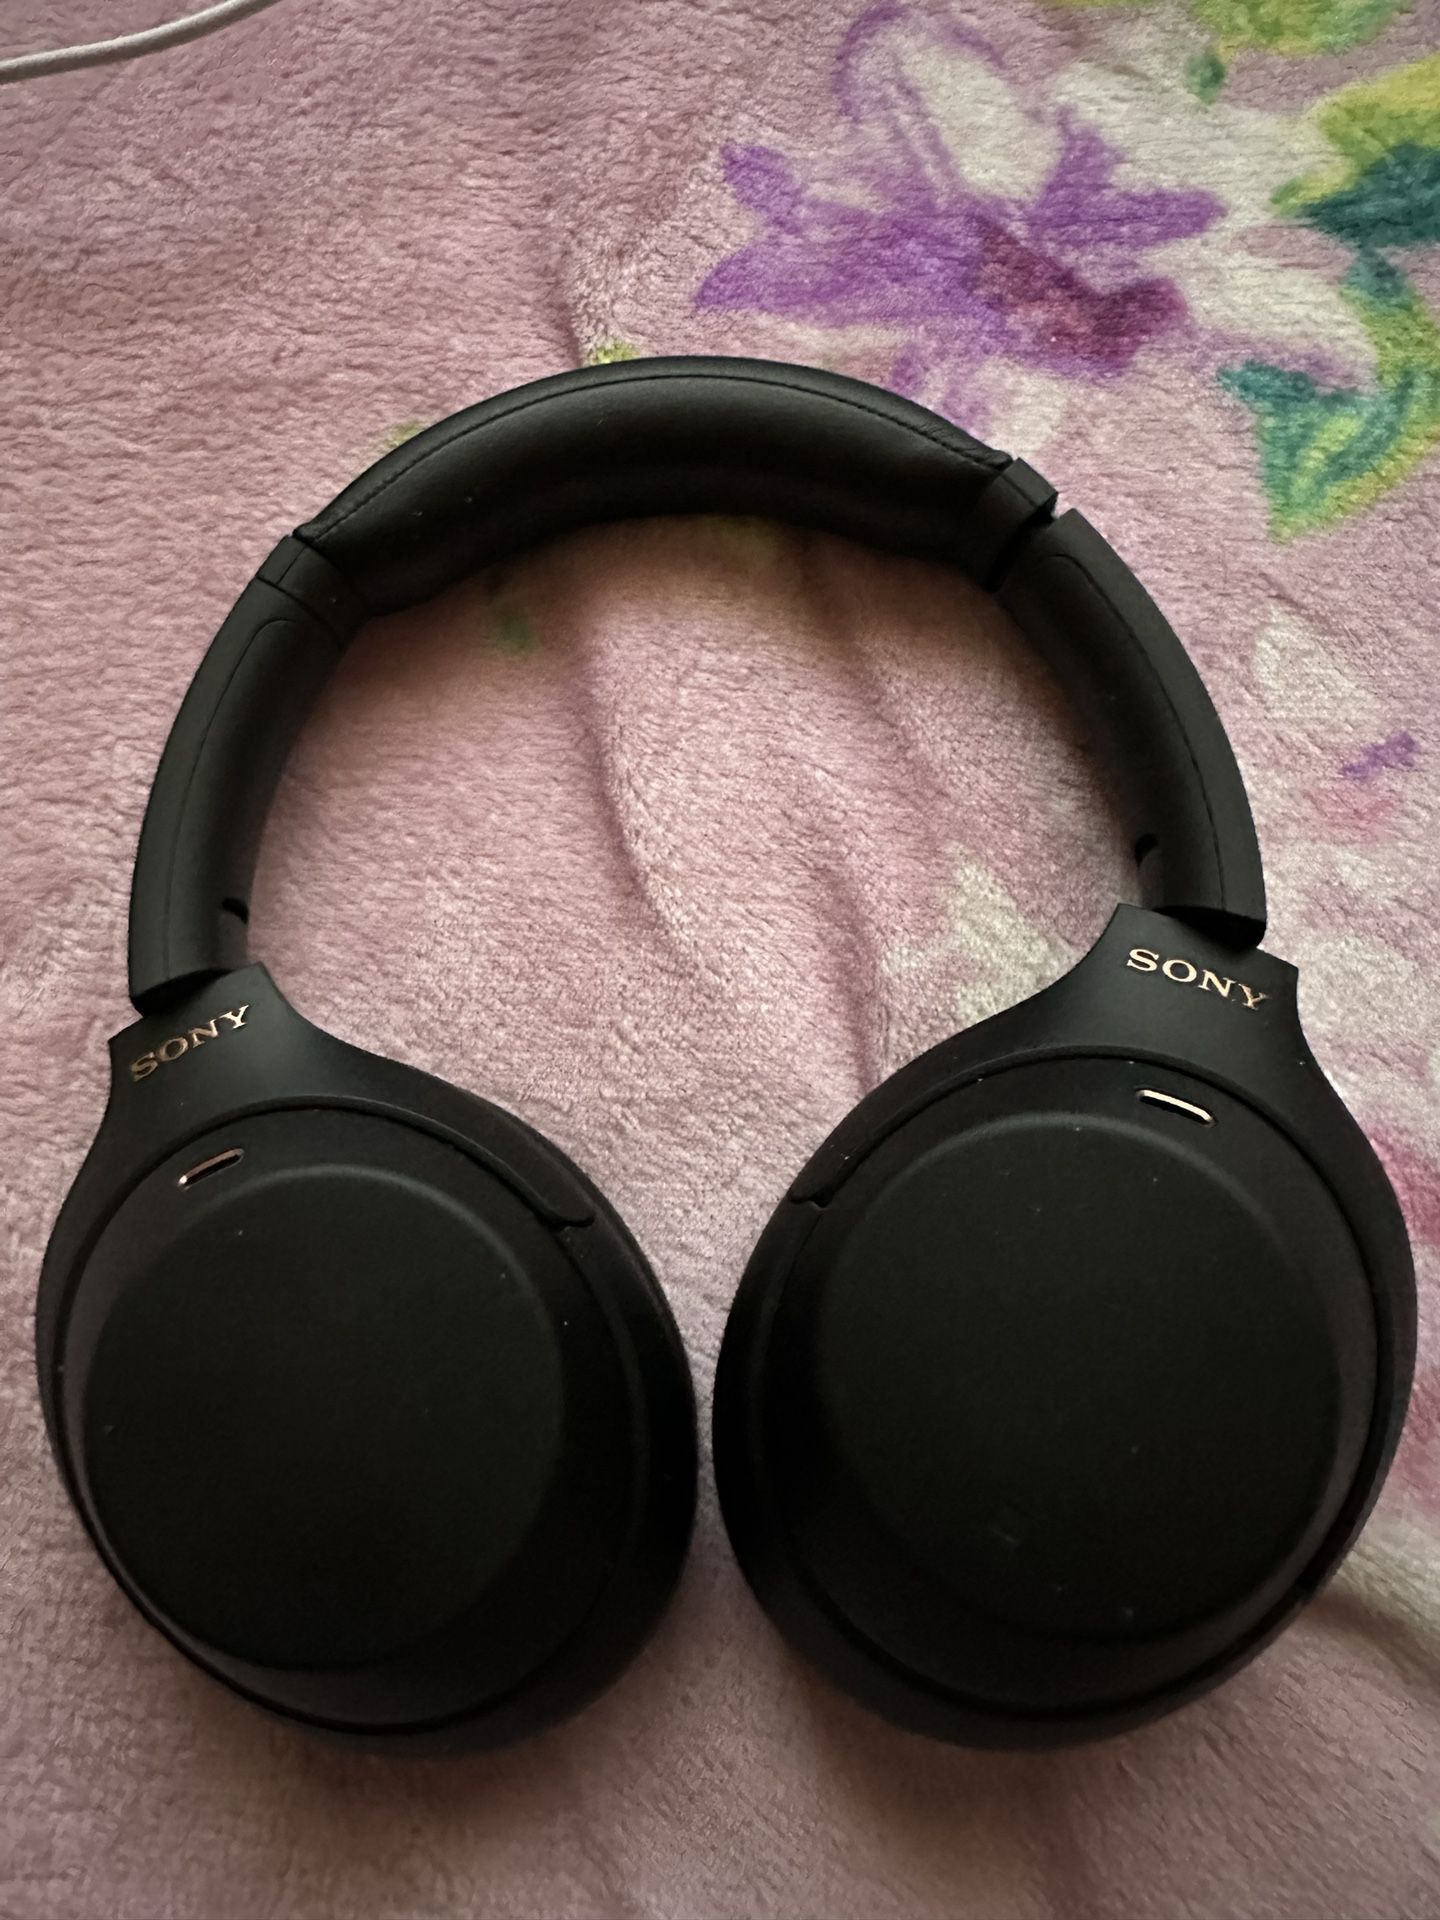 Sony Headphones Black 1000xm4